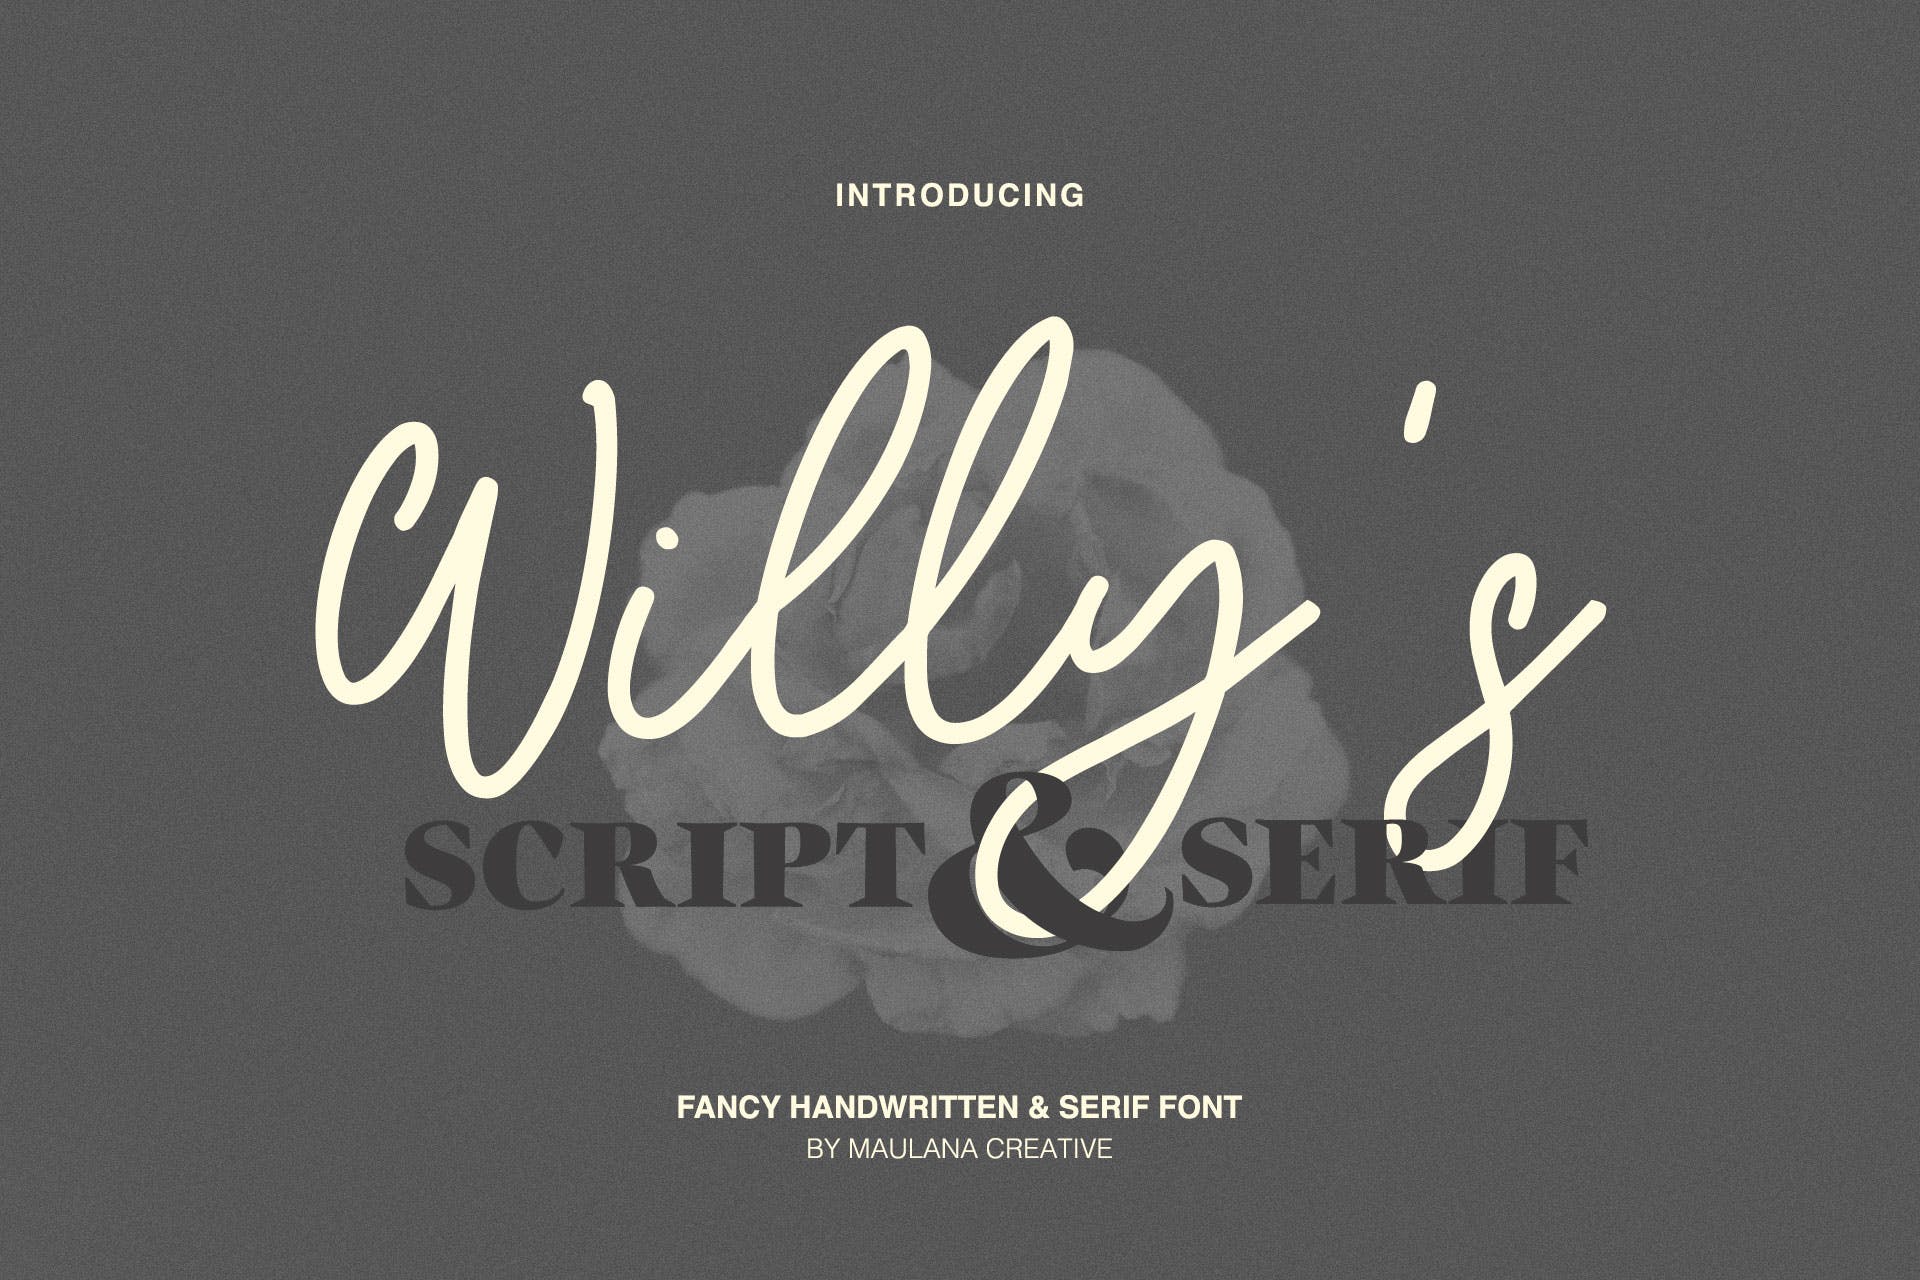 英文手写字体&印刷版式设计衬线字体二重奏组合字体 Willys Script Serif Font插图